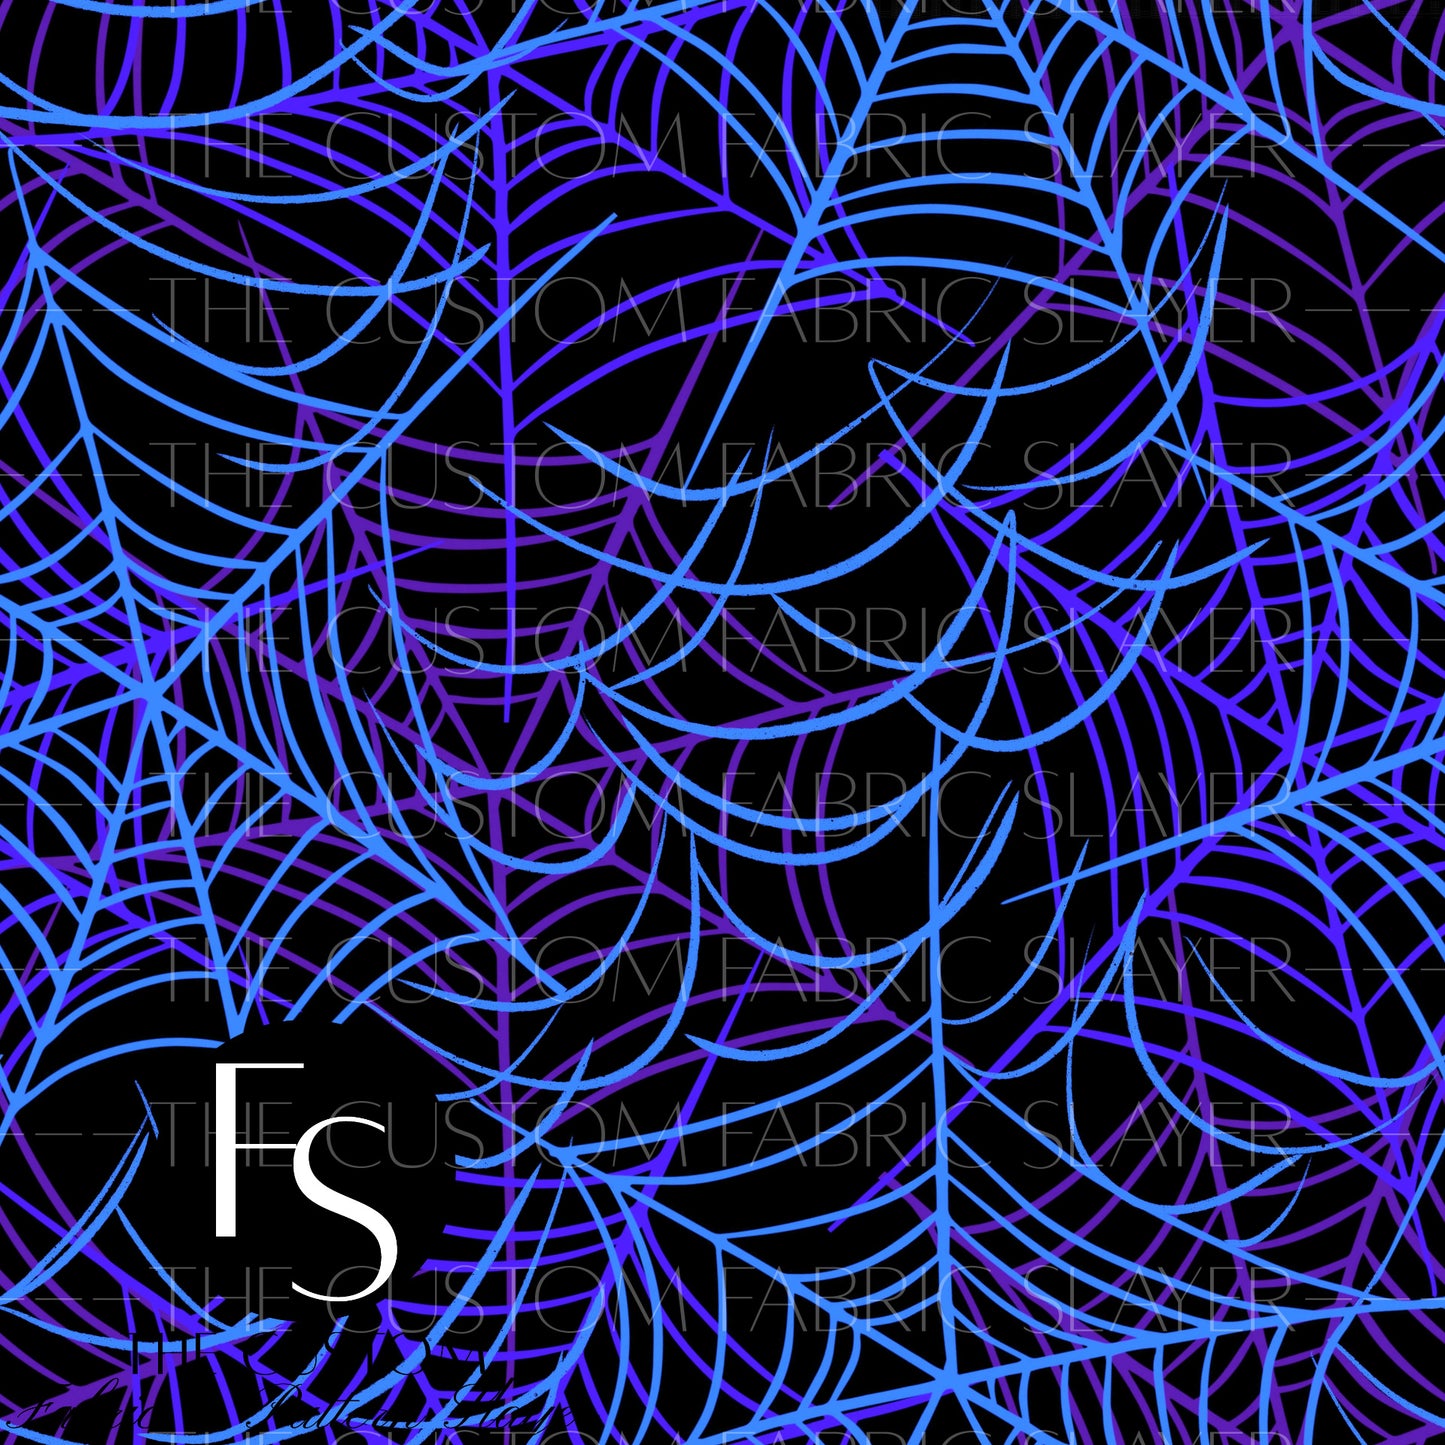 Dark Neon Spider Webs - HEXREJECTVAULT